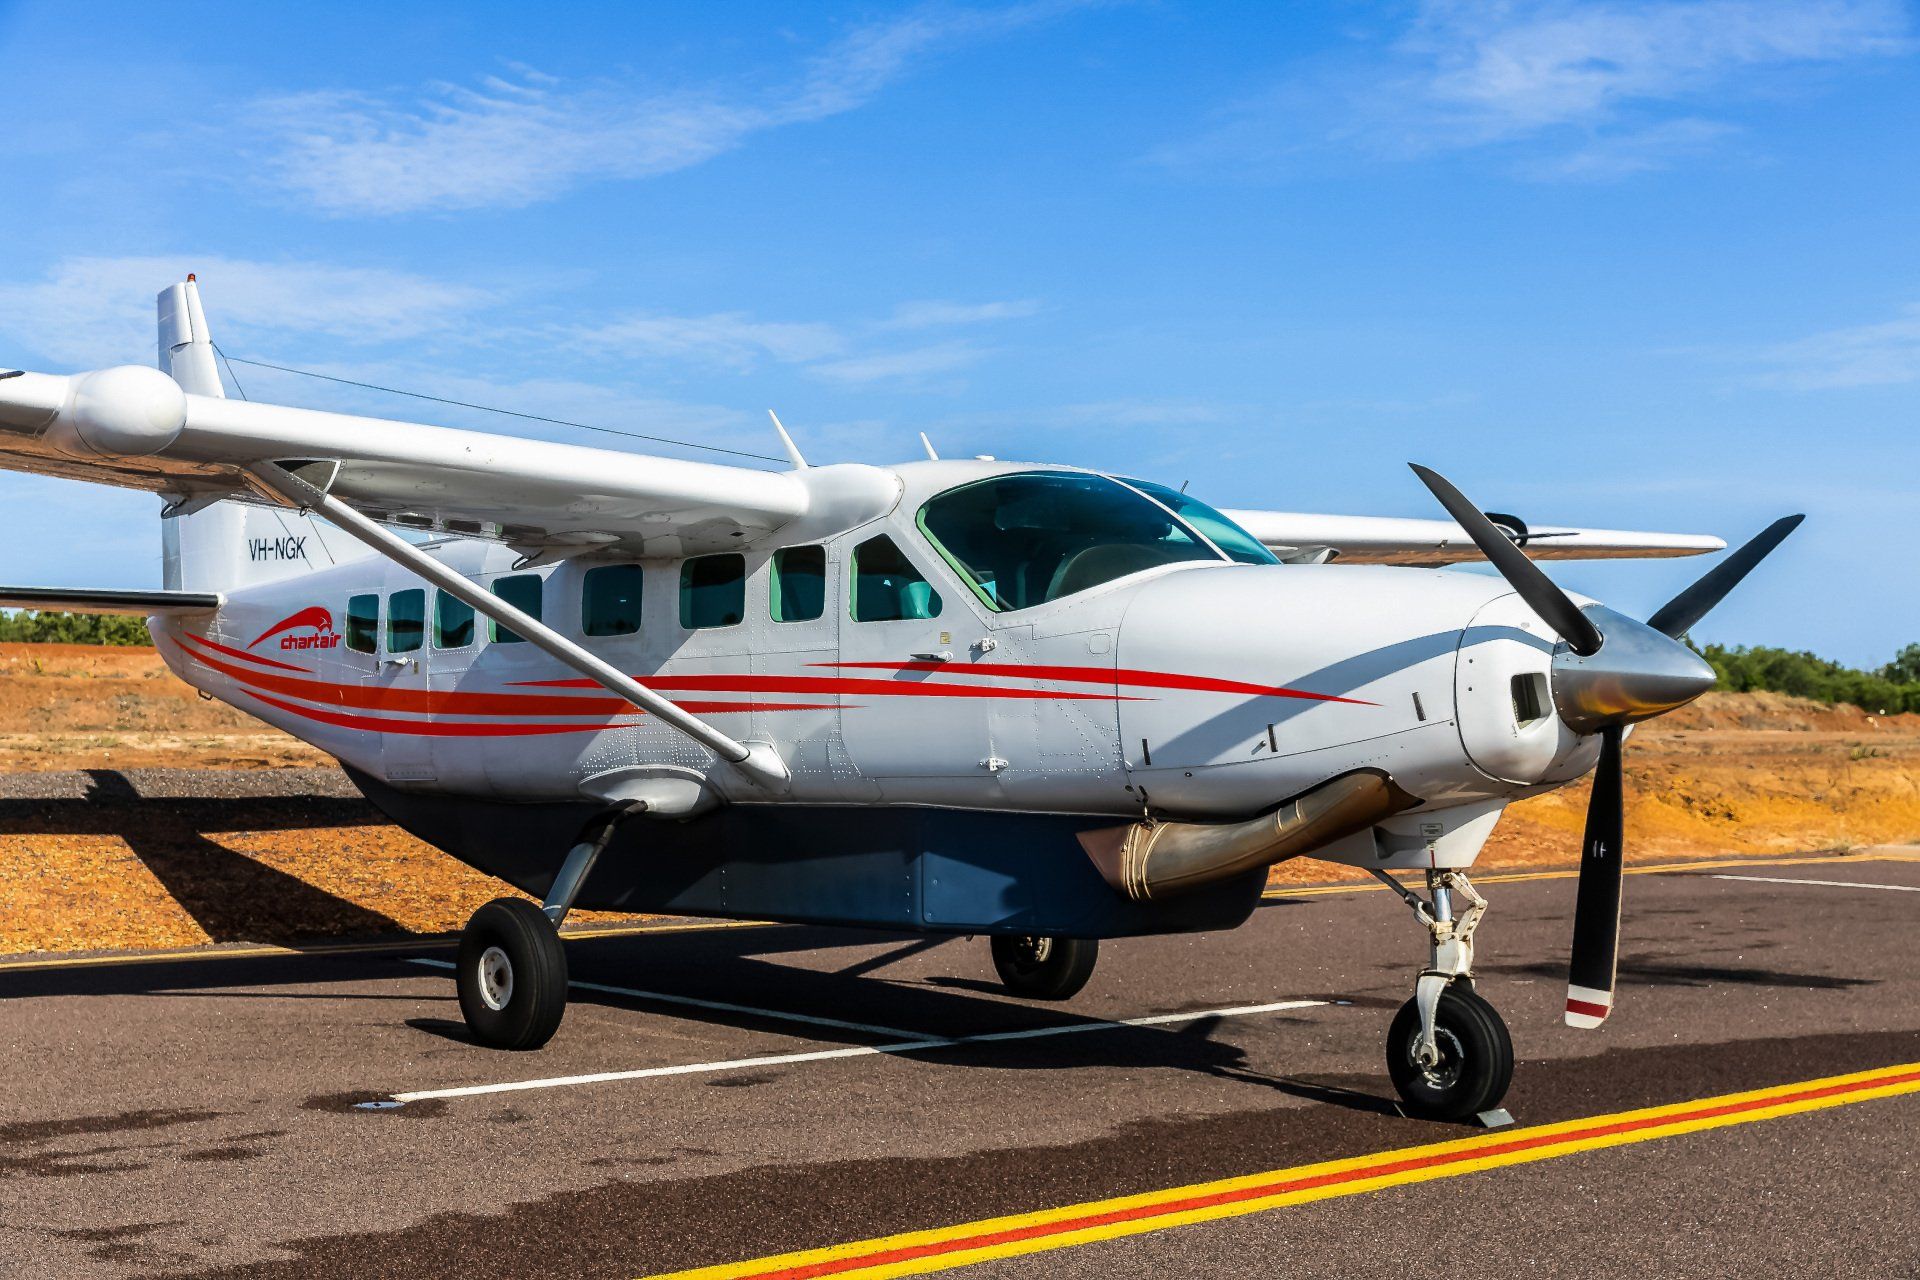 Chartair Fleet - Cessna Caravan 208B